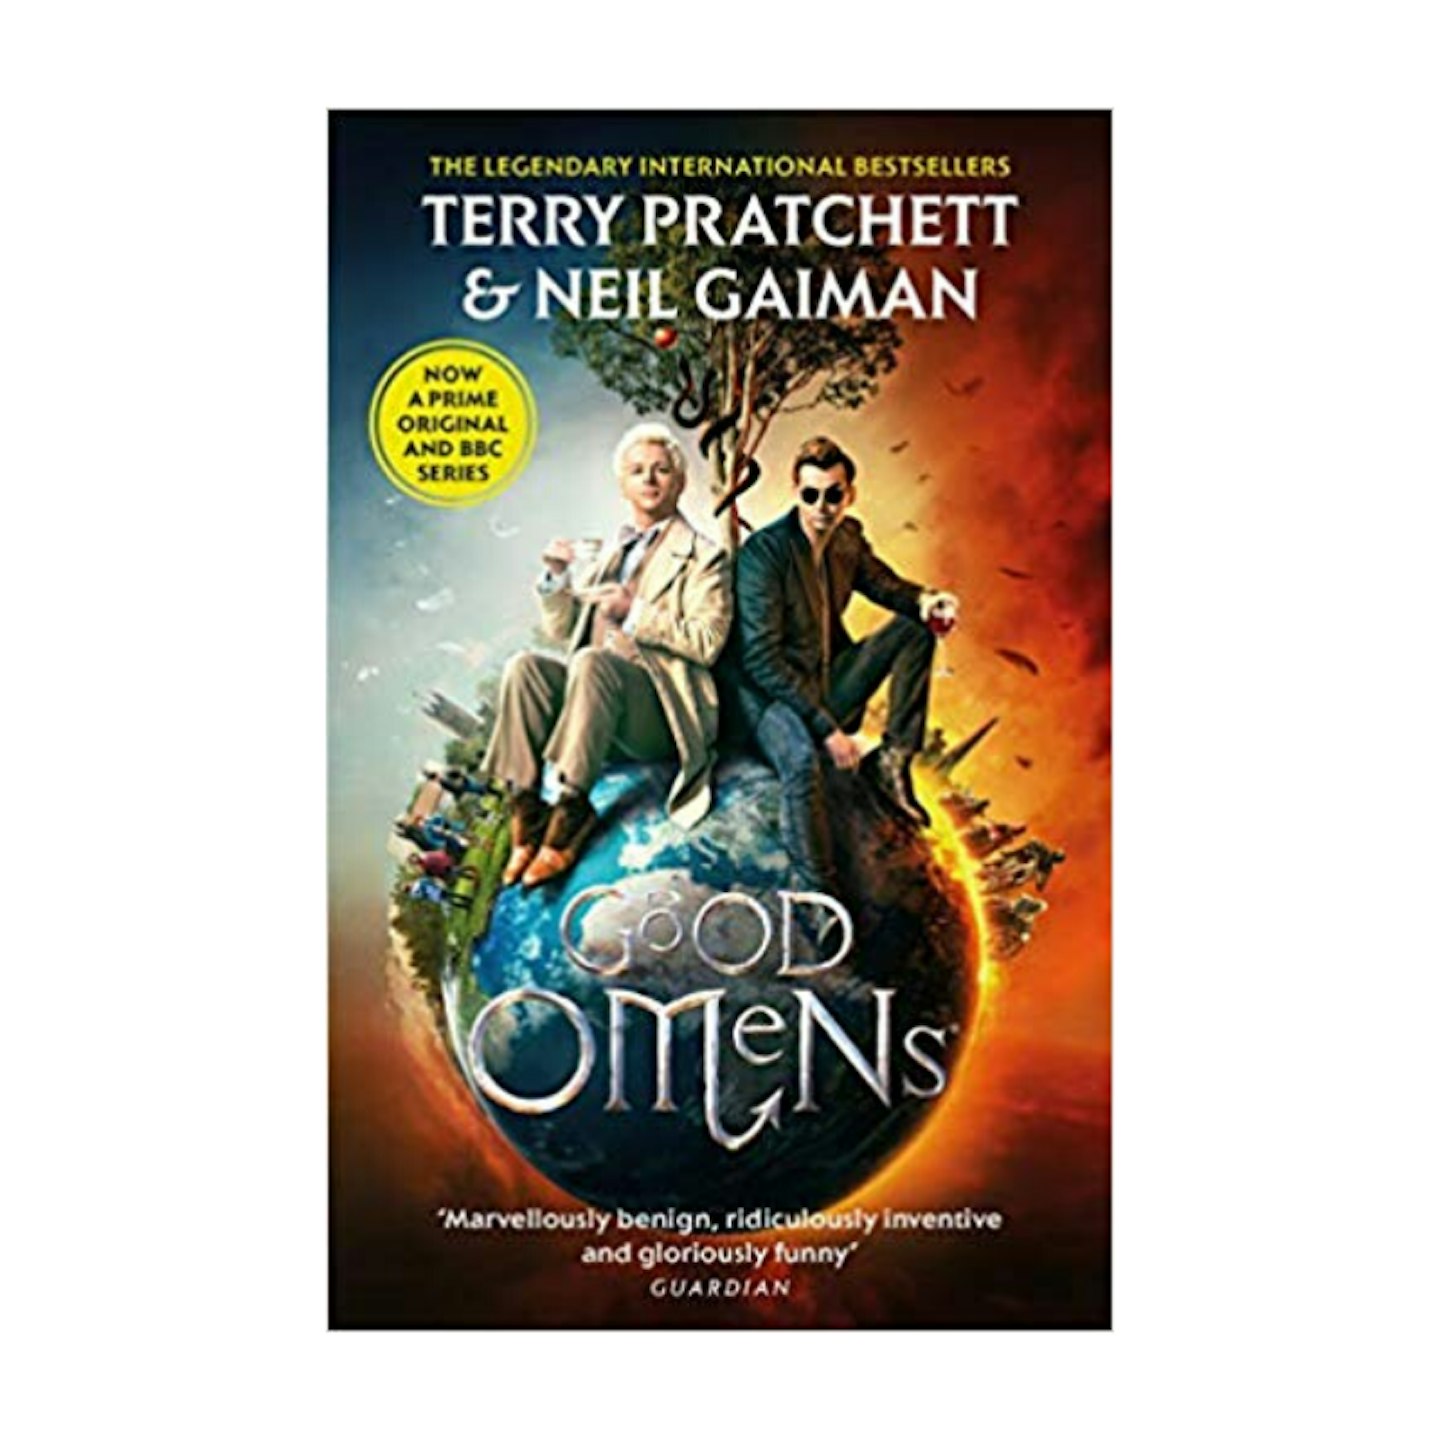 Good Omens, Terry Pratchett and Neil Gaiman